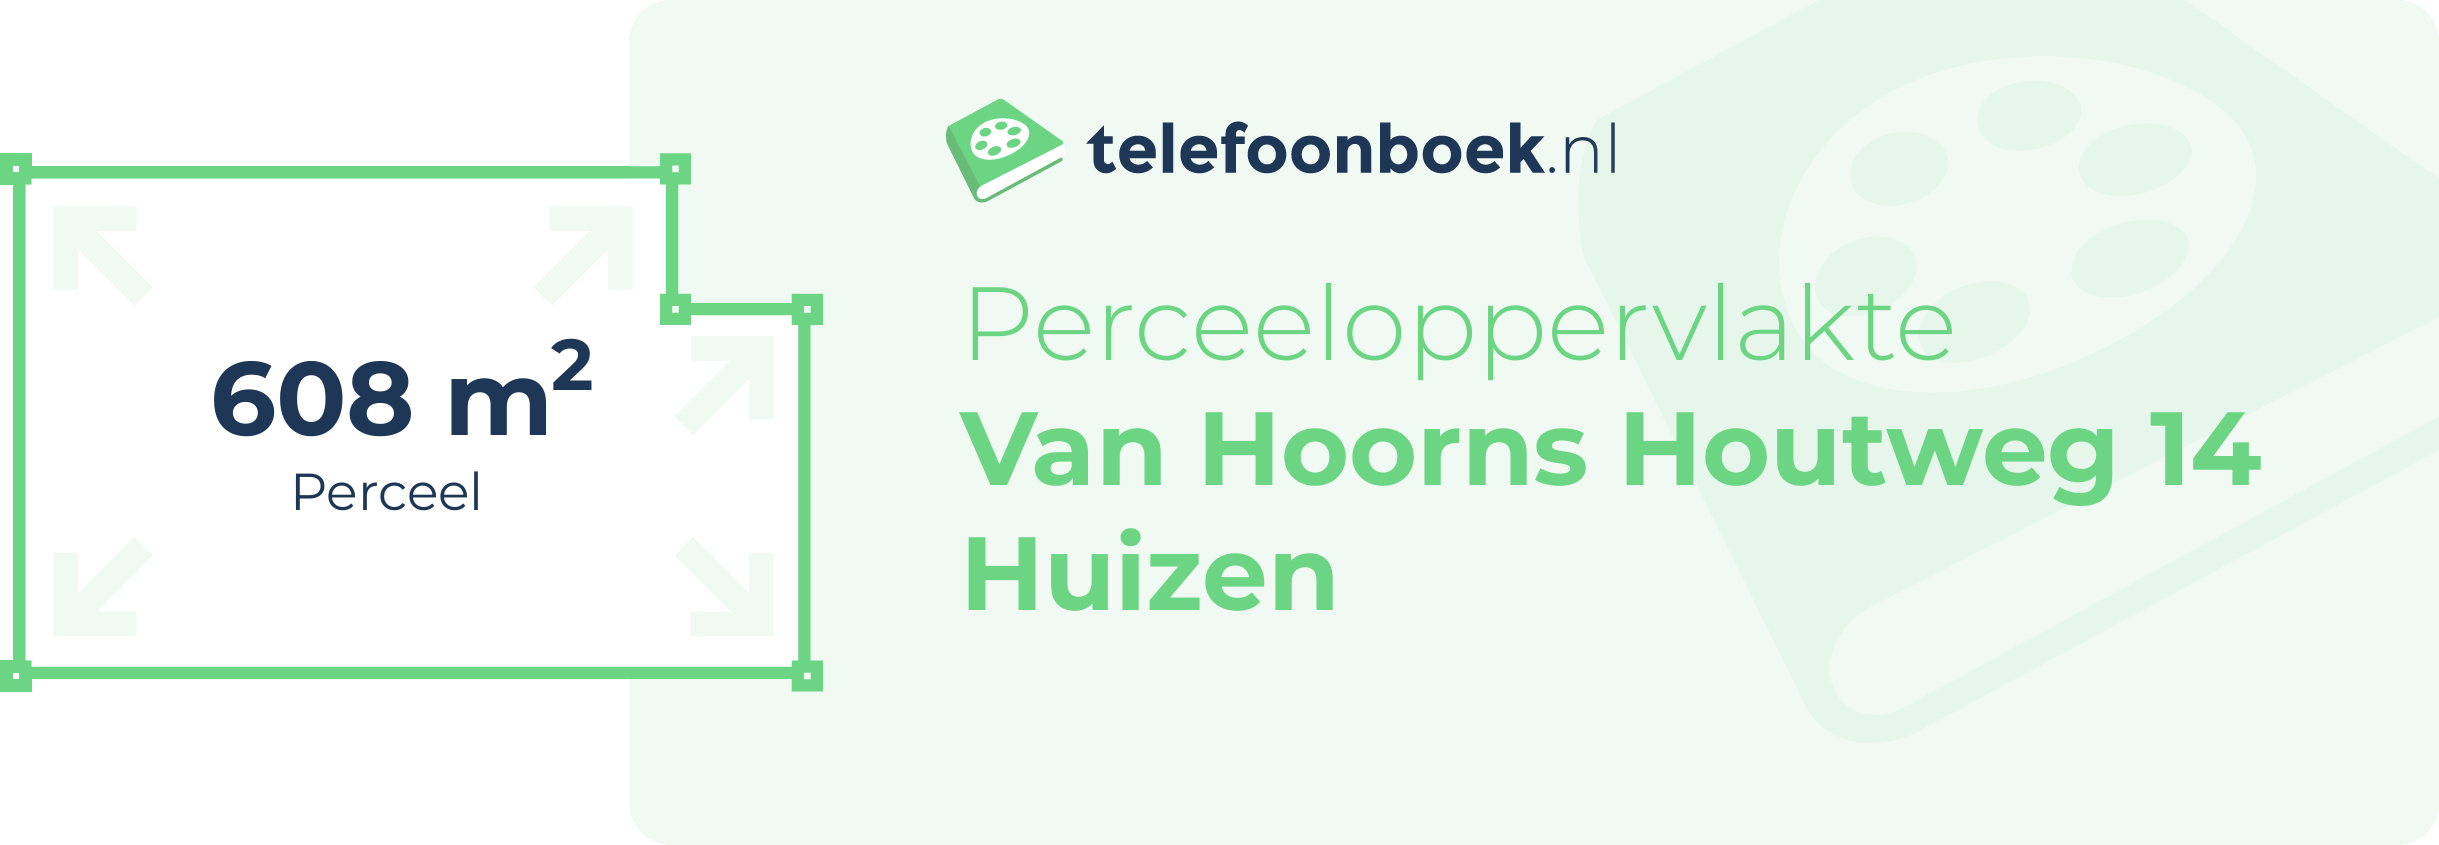 Perceeloppervlakte Van Hoorns Houtweg 14 Huizen